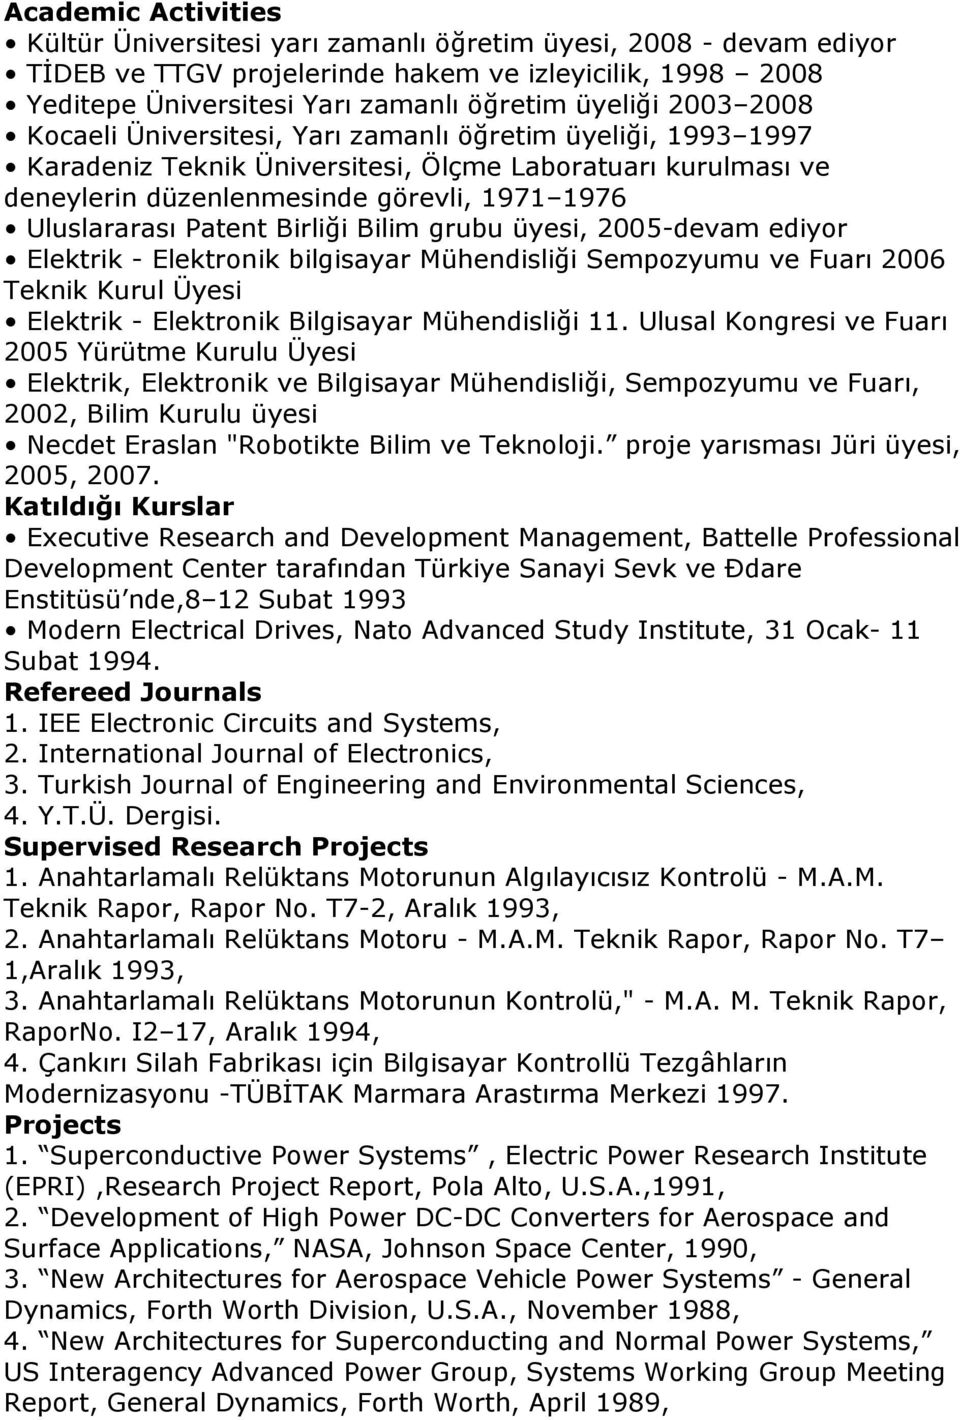 Birliği Bilim grubu üyesi, 2005-devam ediyor Elektrik - Elektronik bilgisayar Mühendisliği Sempozyumu ve Fuarı 2006 Teknik Kurul Üyesi Elektrik - Elektronik Bilgisayar Mühendisliği 11.